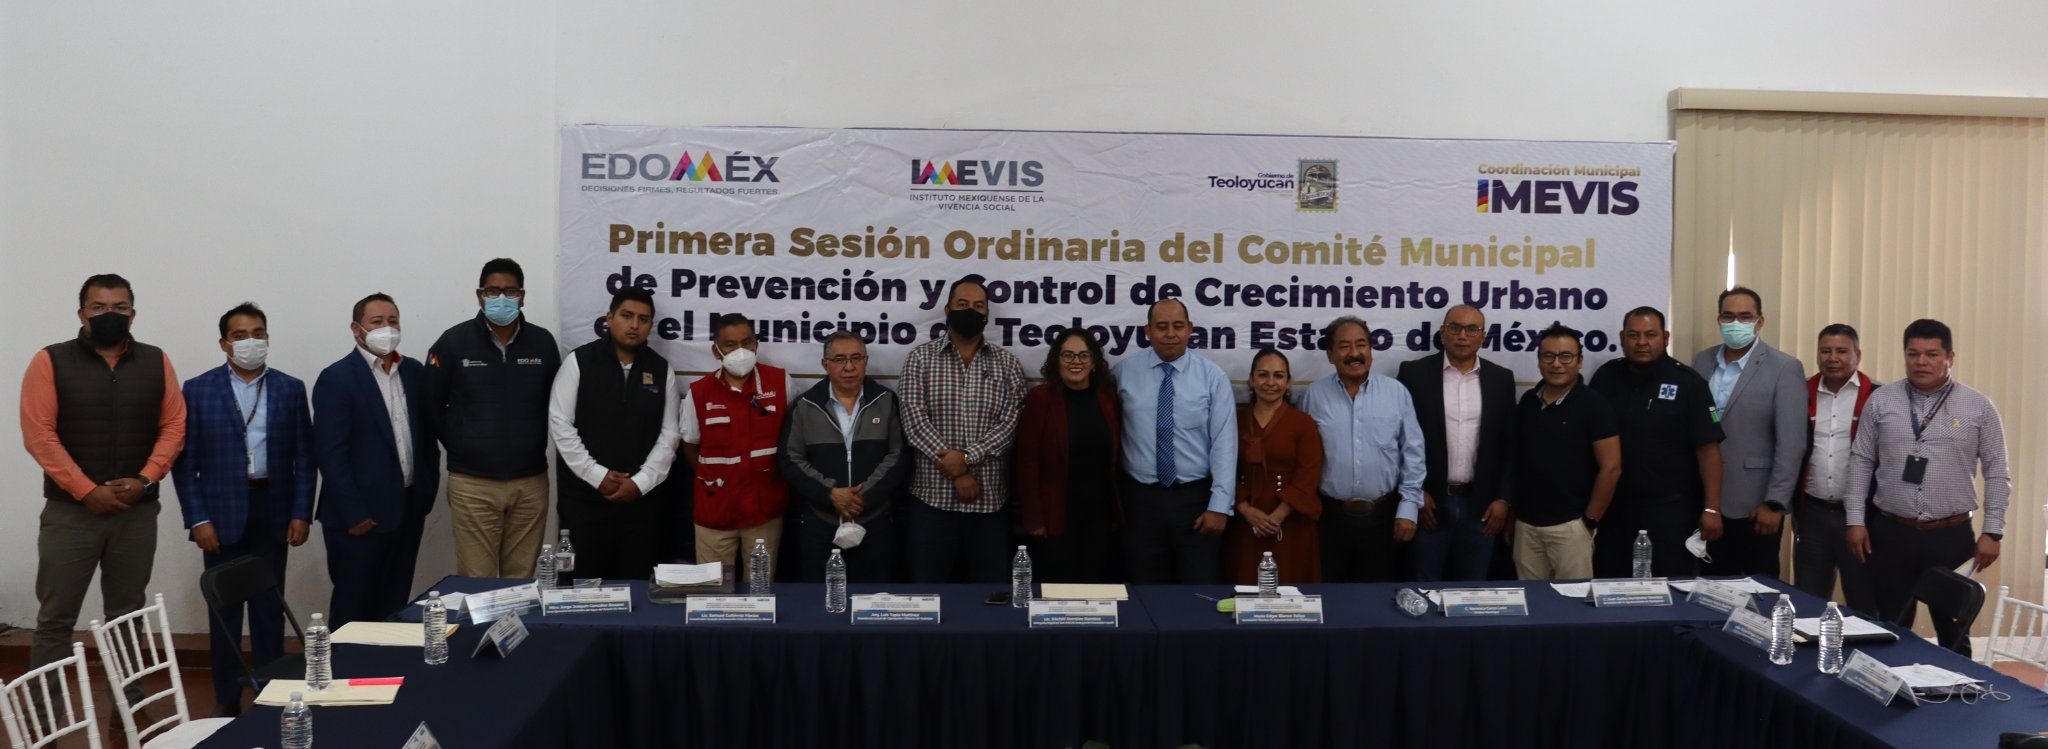 Primera Sesión Ordinaria del Comité Municipal de Prevención y Control de Crecimiento Urbano